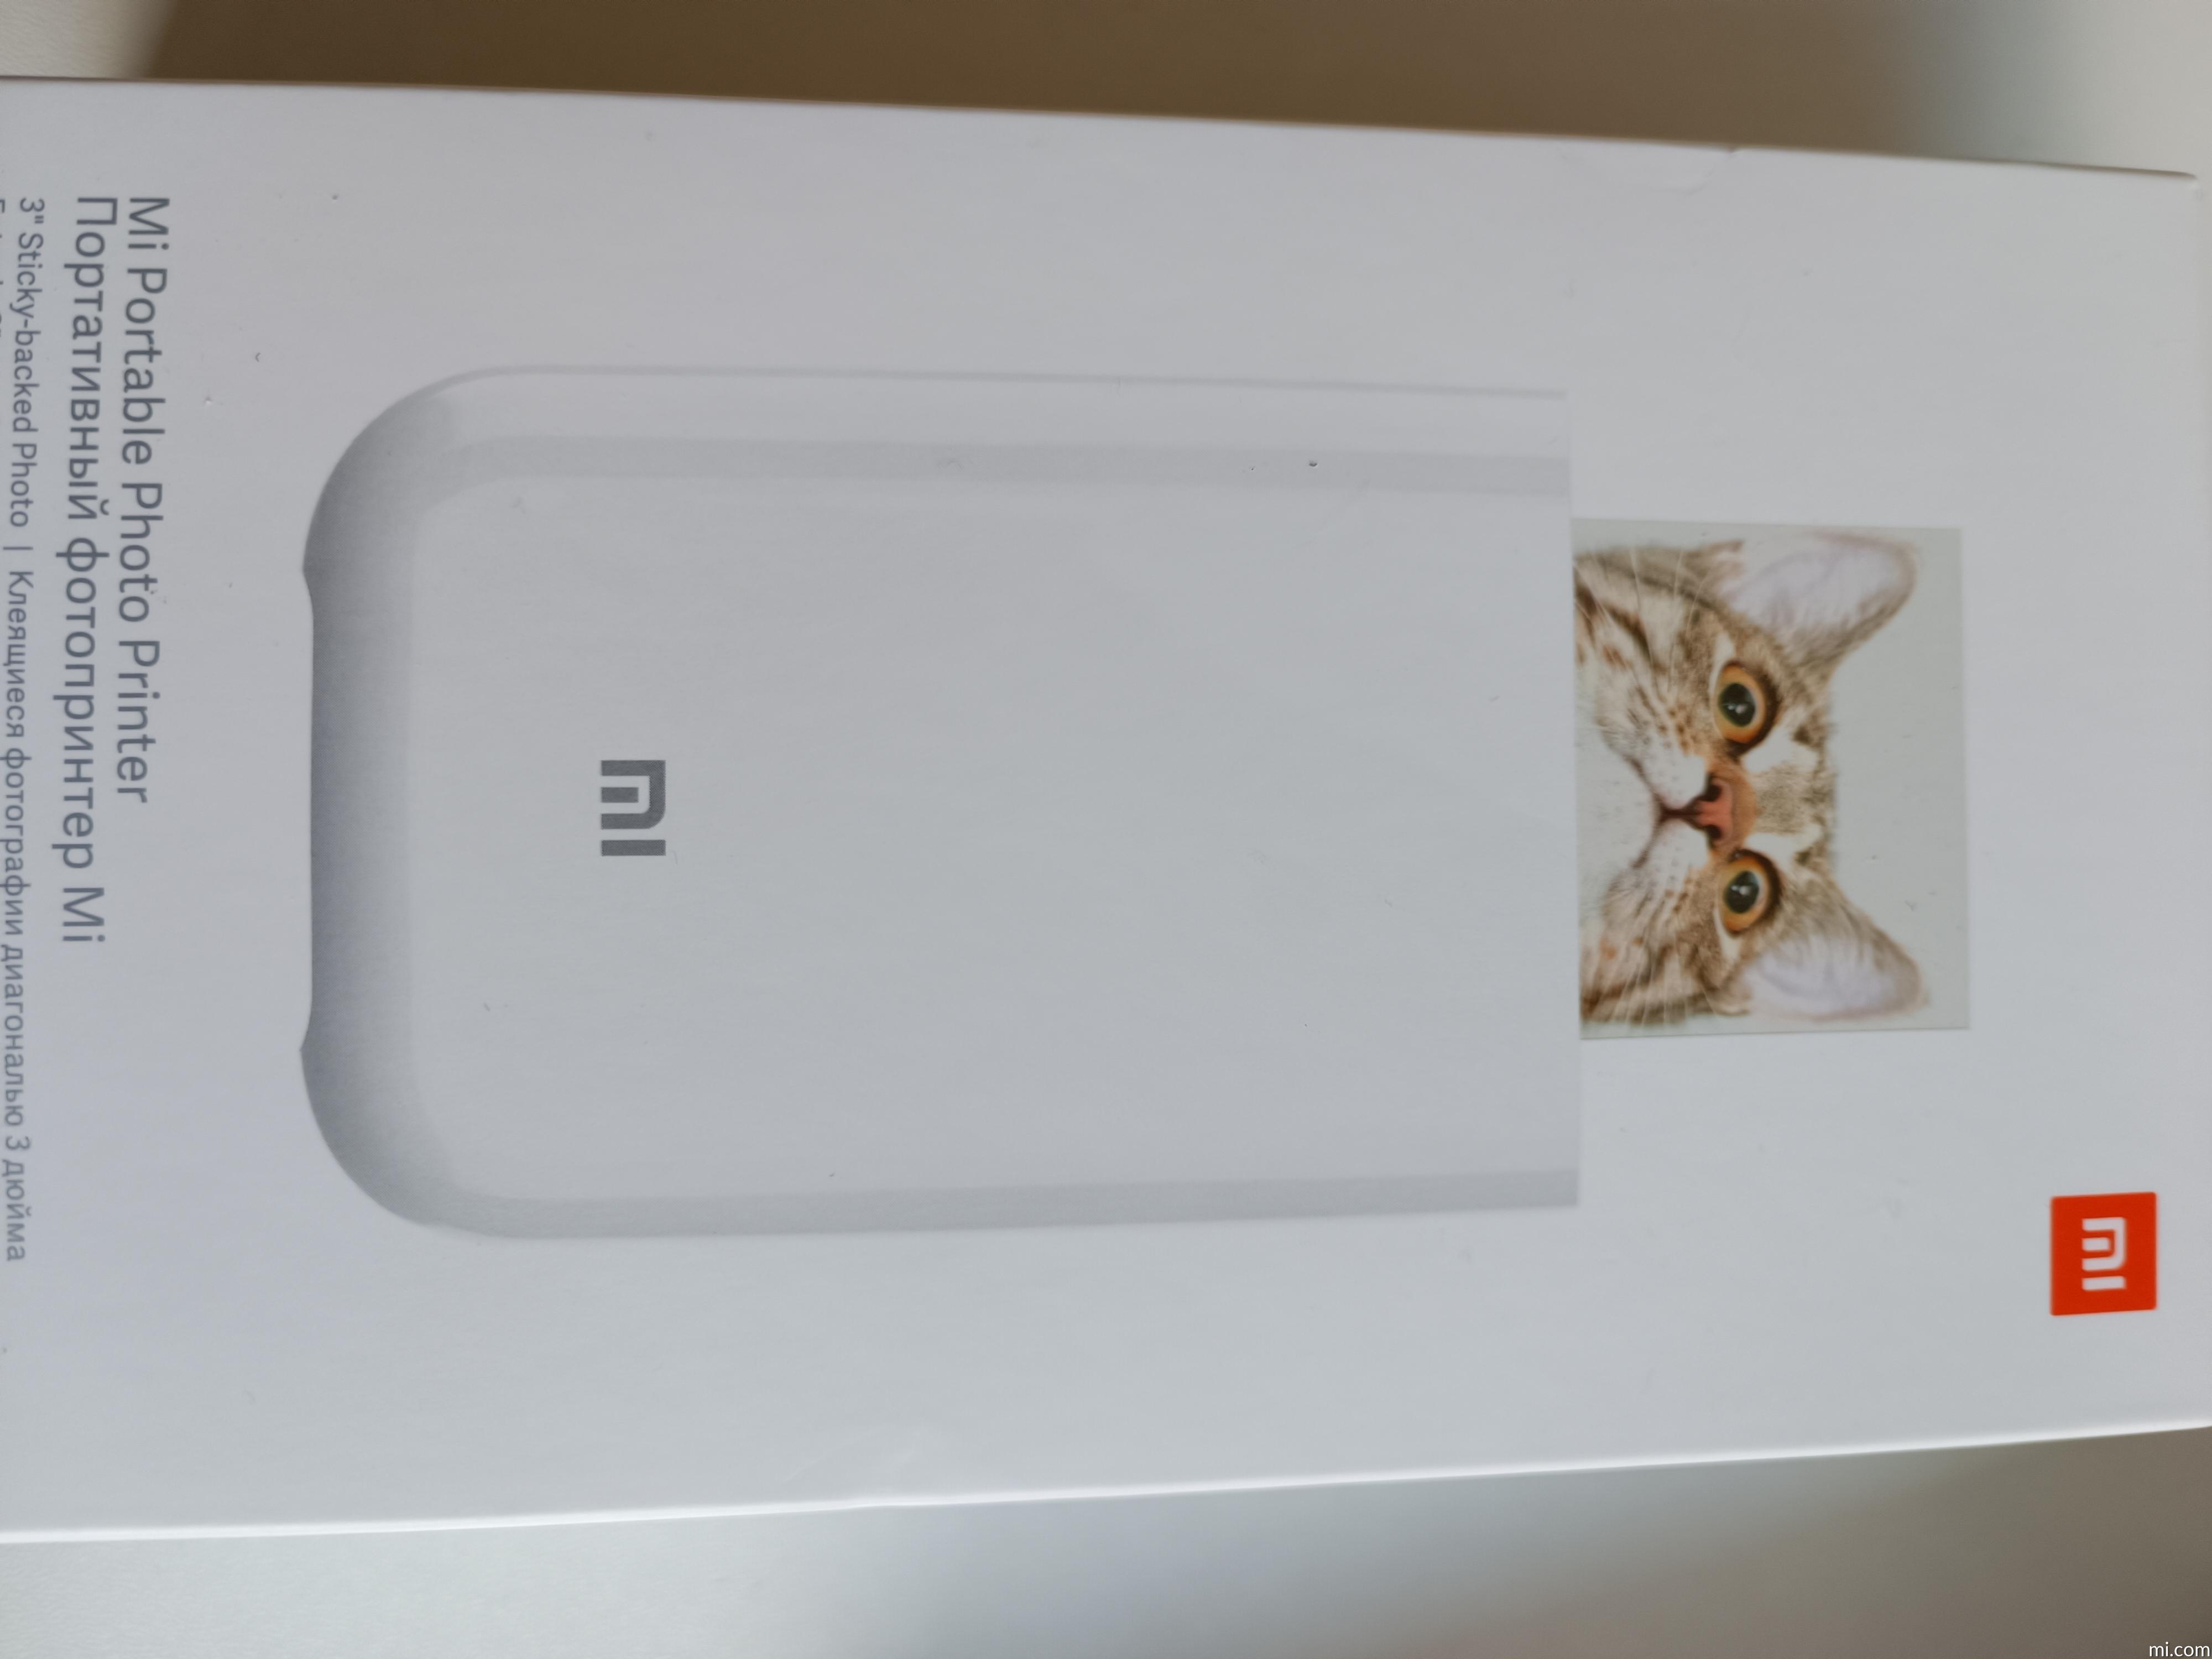 Mi Portable Photo Printer - Xiaomi UK